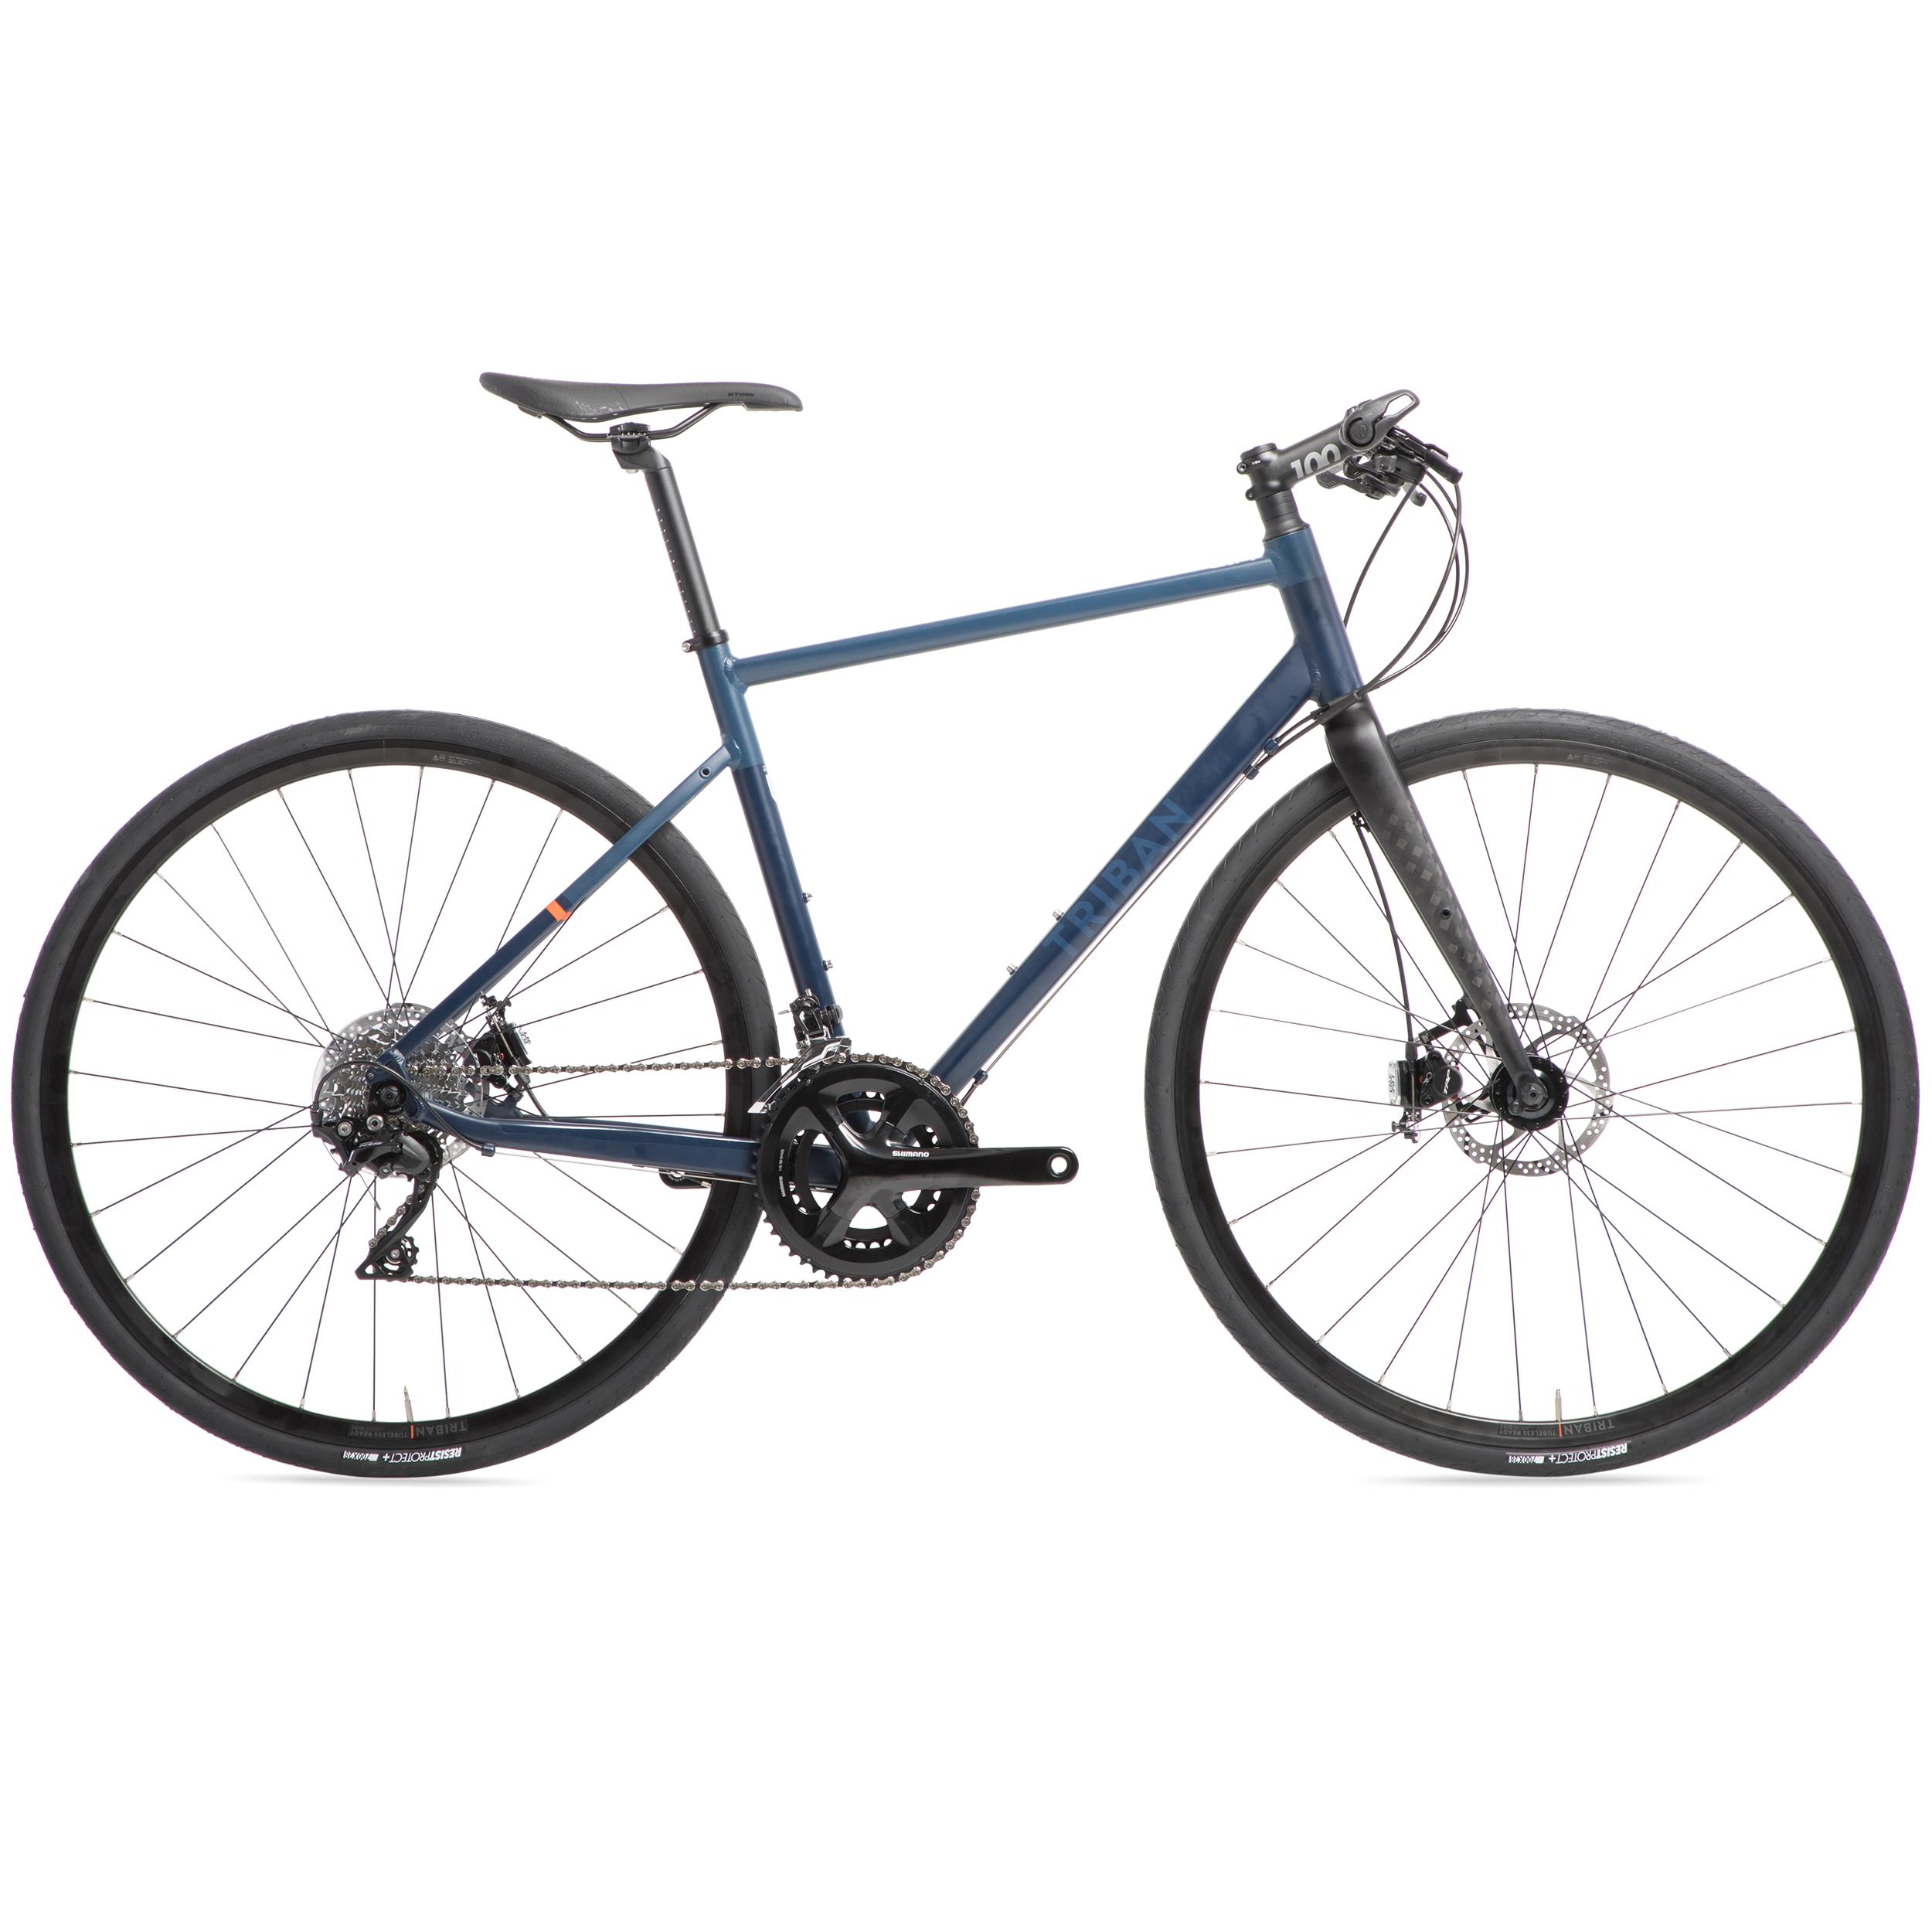 Bicicletă de șosea RC520 Flatbar frână pe disc Albastru albastru